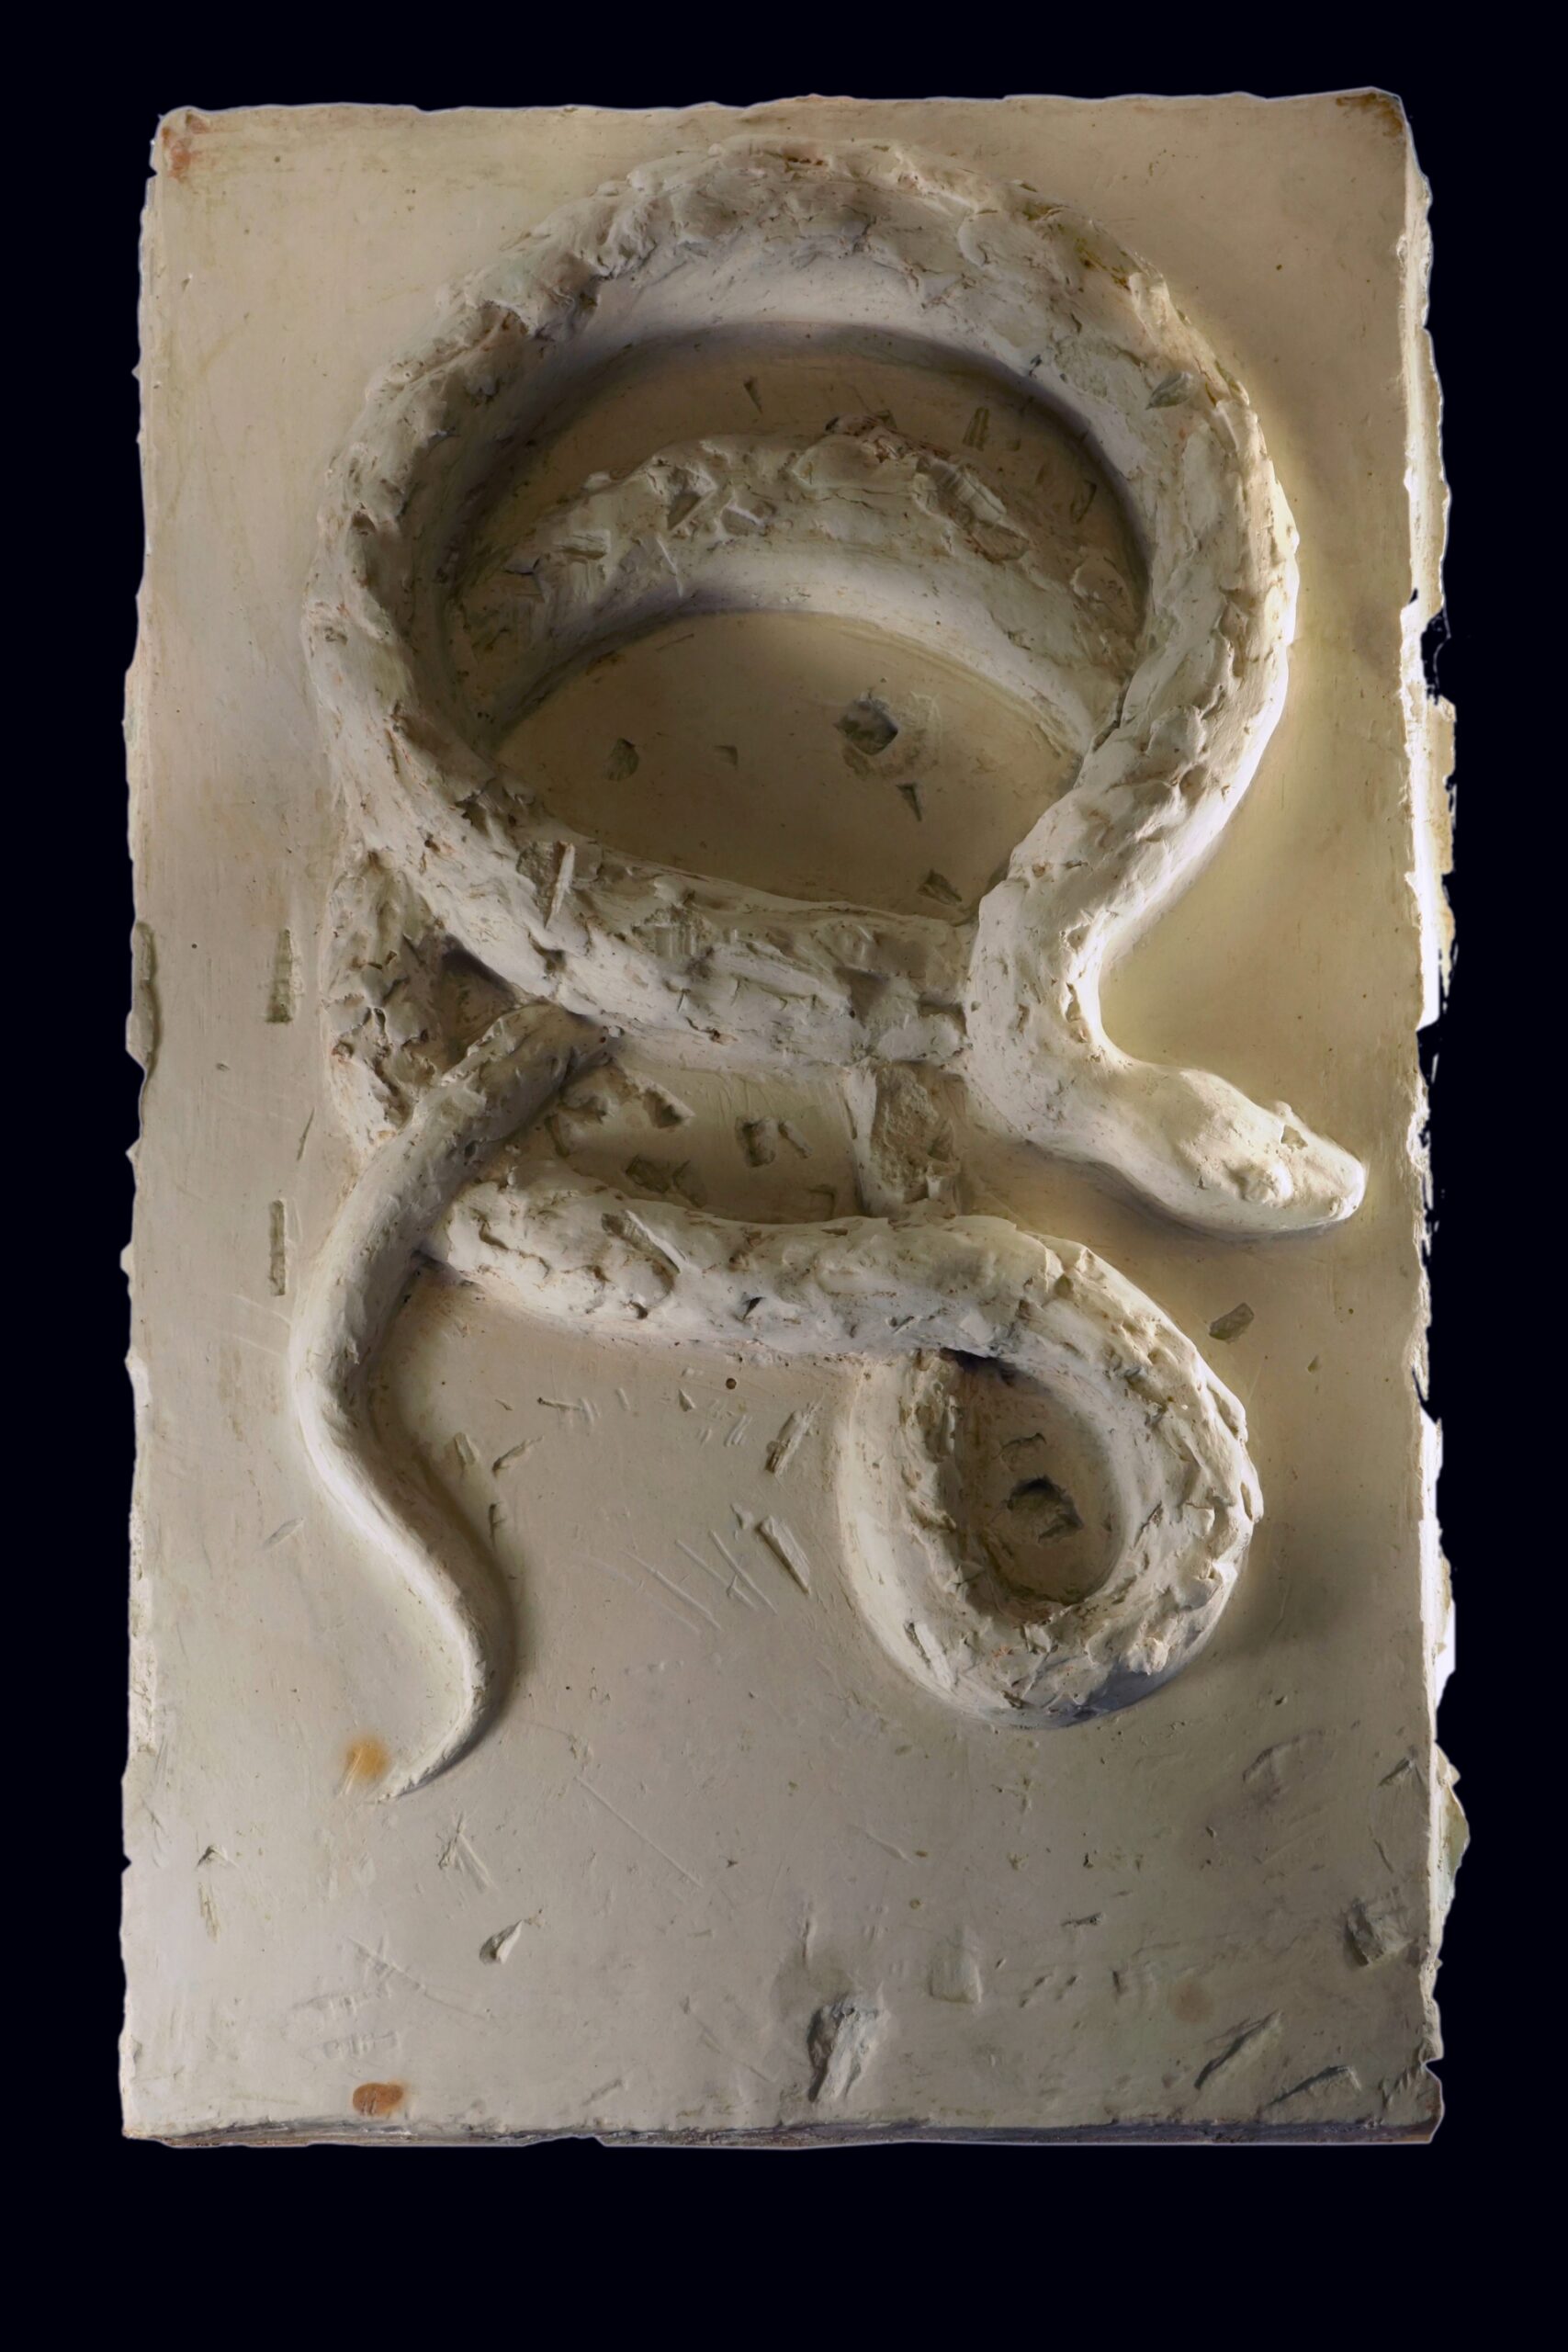 Marcelina Nowaczewska - zdjęcie przedstawia płaskorzeźbę zwijającego się węża, wykonana w gipsie.